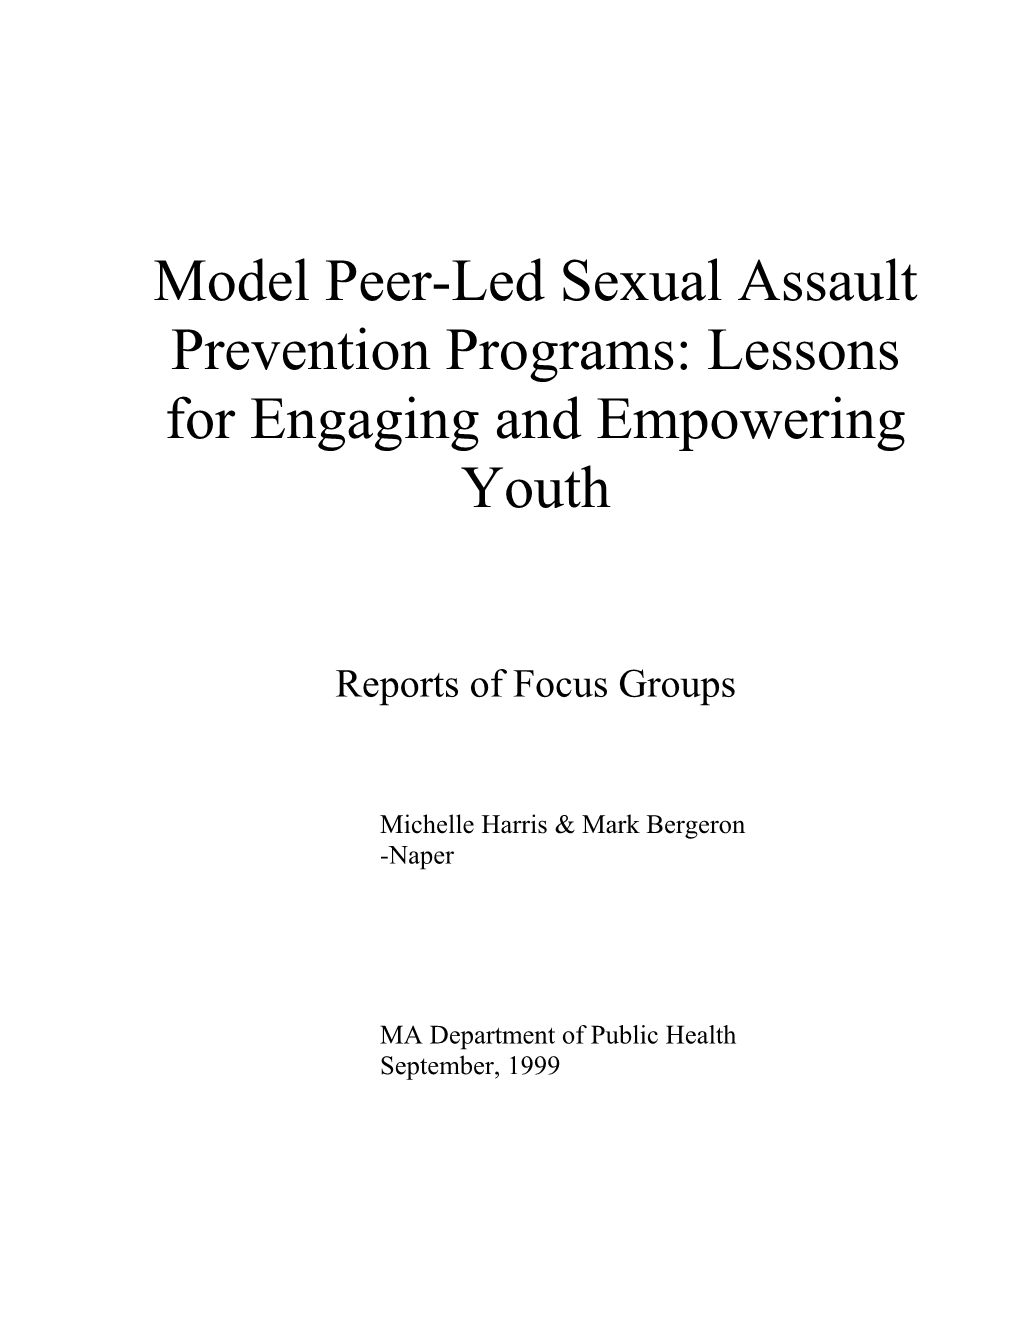 Model Peer-Led Sexual Assault Prevention Programs